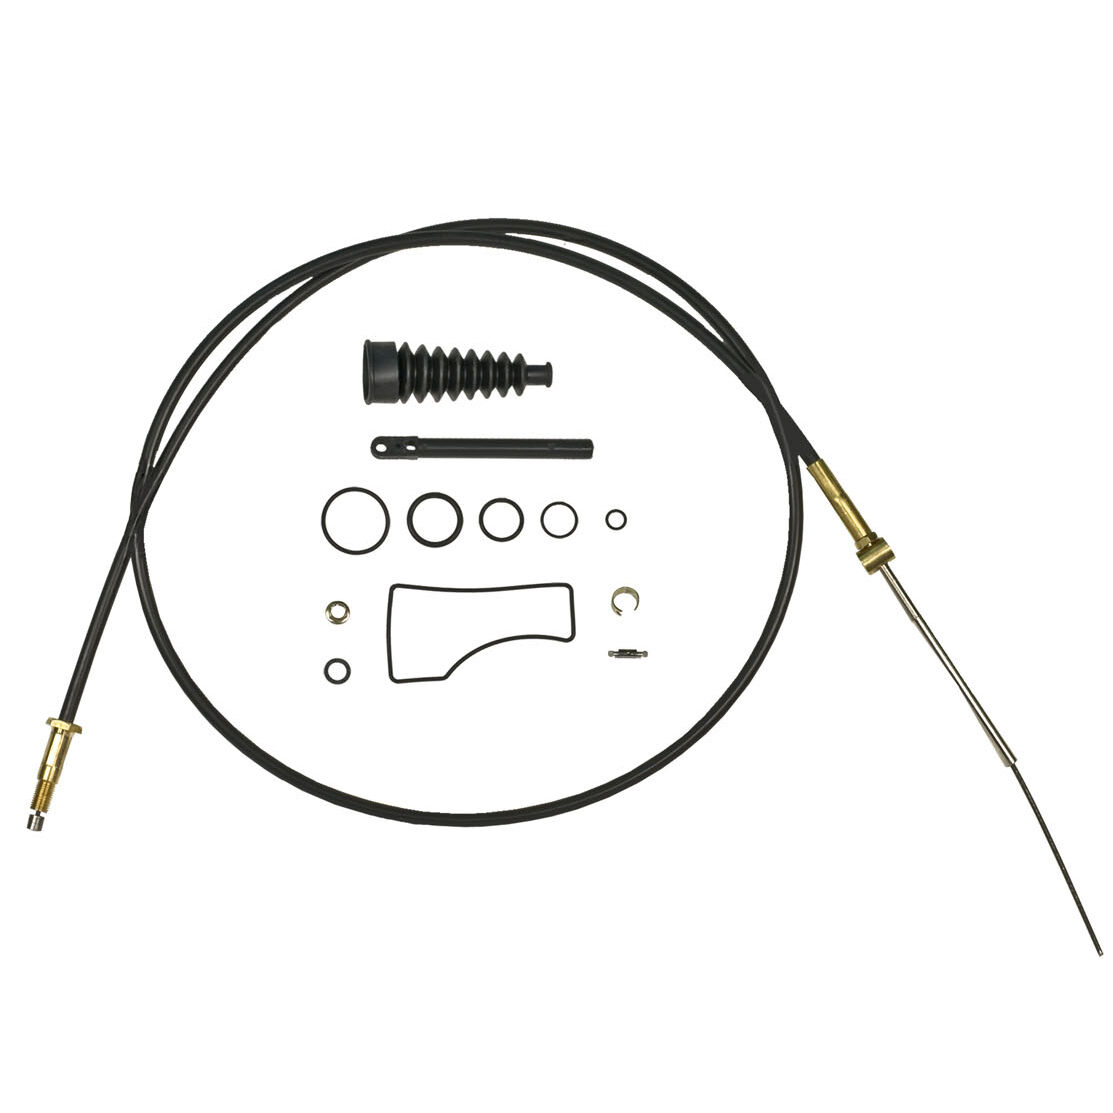 Sierra Lower Shift Cable Kit For Mercruiser Bravo, Part #18-2604